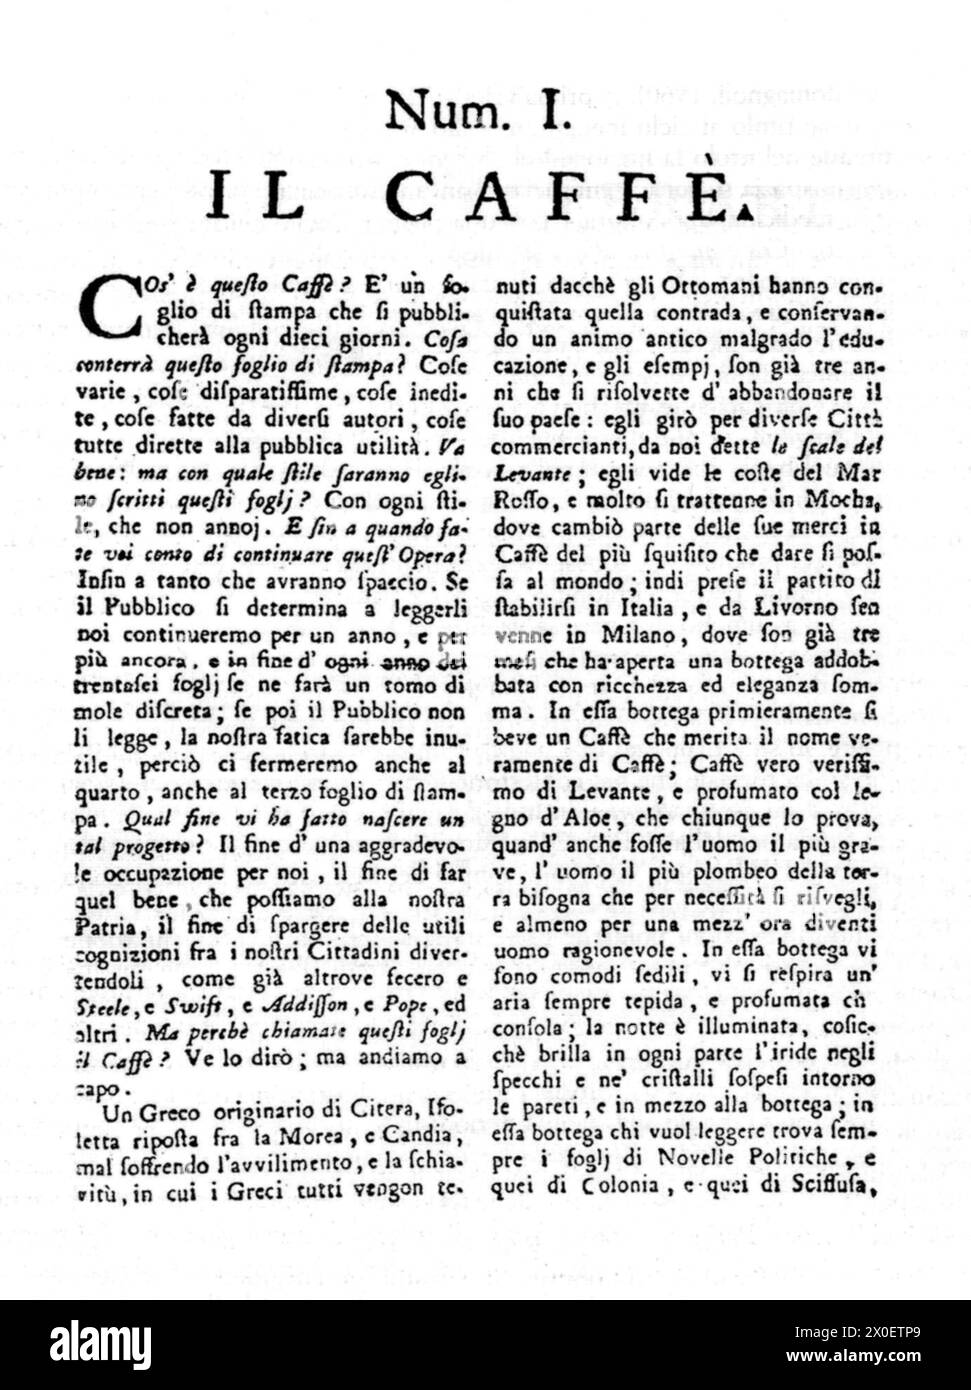 1764, Milano, ITALIA: Il nobile illustratore italiano, scrittore, economista, filosofo e storico PIETRO VERRI ( 1728 - 1797 ), editore della rivista letteraria "il caffè", primo numero, 1764. - CONTE - ILLUMINISMO - ILLUMINISM - ILLUMINISTA - STORIA - FOTO STORICHE - ITALIA - ECONOMIA - ECONOMISTA - FILOSOFIA - FILOSOFIA - FILOSOFO - SCRITTORE - LETTERATURA - STORICO - LETTERATURA - LETTERATO - frontespizio - nobiltà italiana - nobiltà italiana - nobile italiano - libro - frontespizio - rivista letteraria - INTELLETTUALE --- Archivio GBB Foto Stock